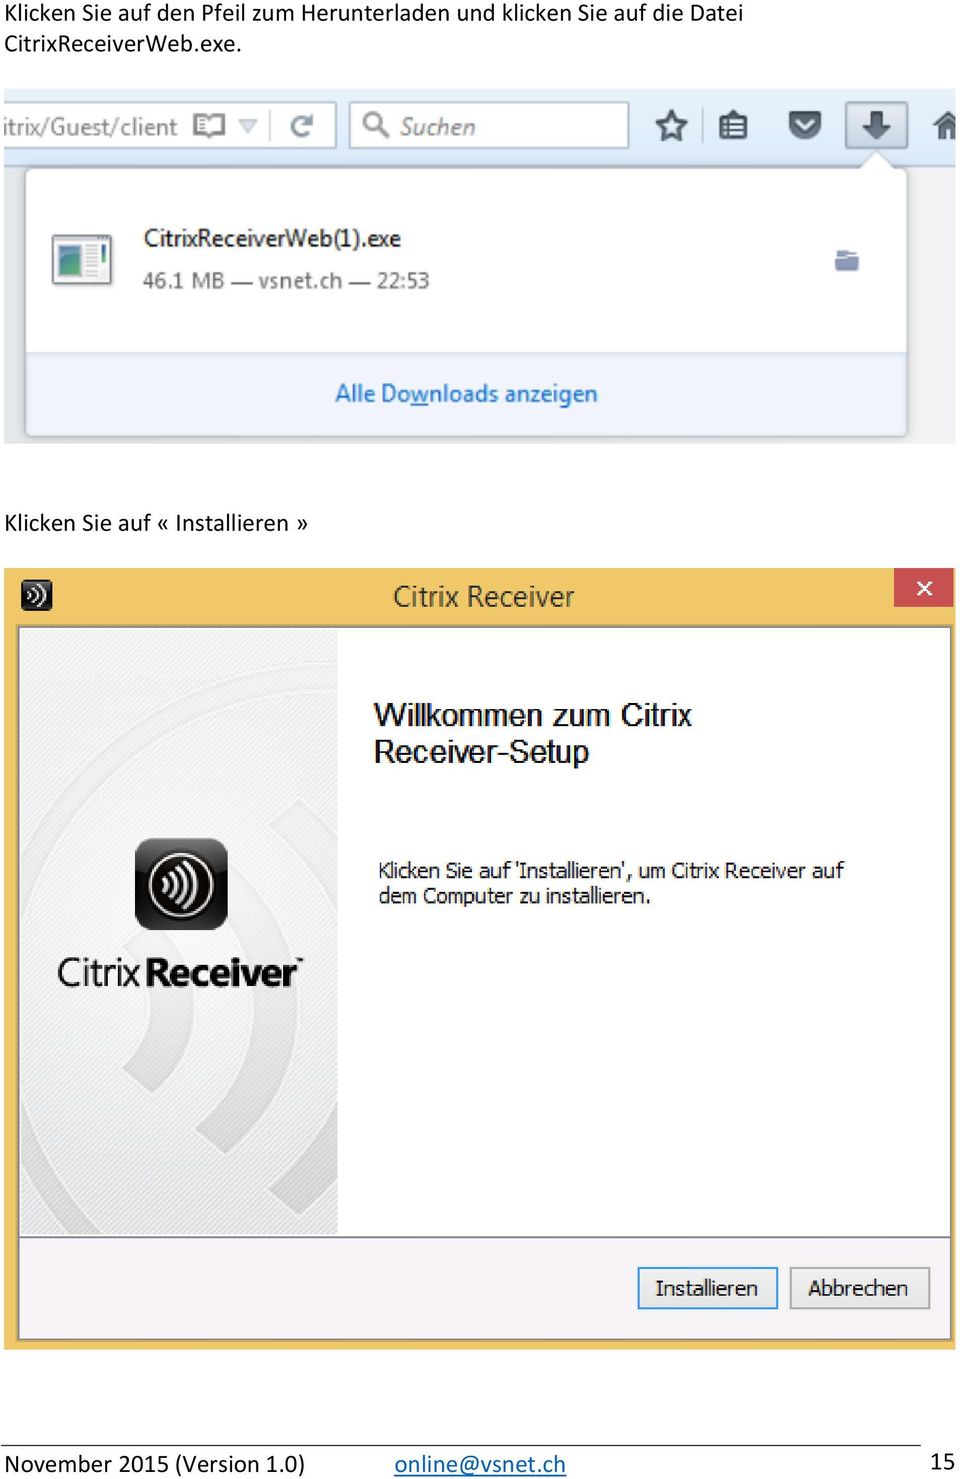 CitrixReceiverWeb.exe.